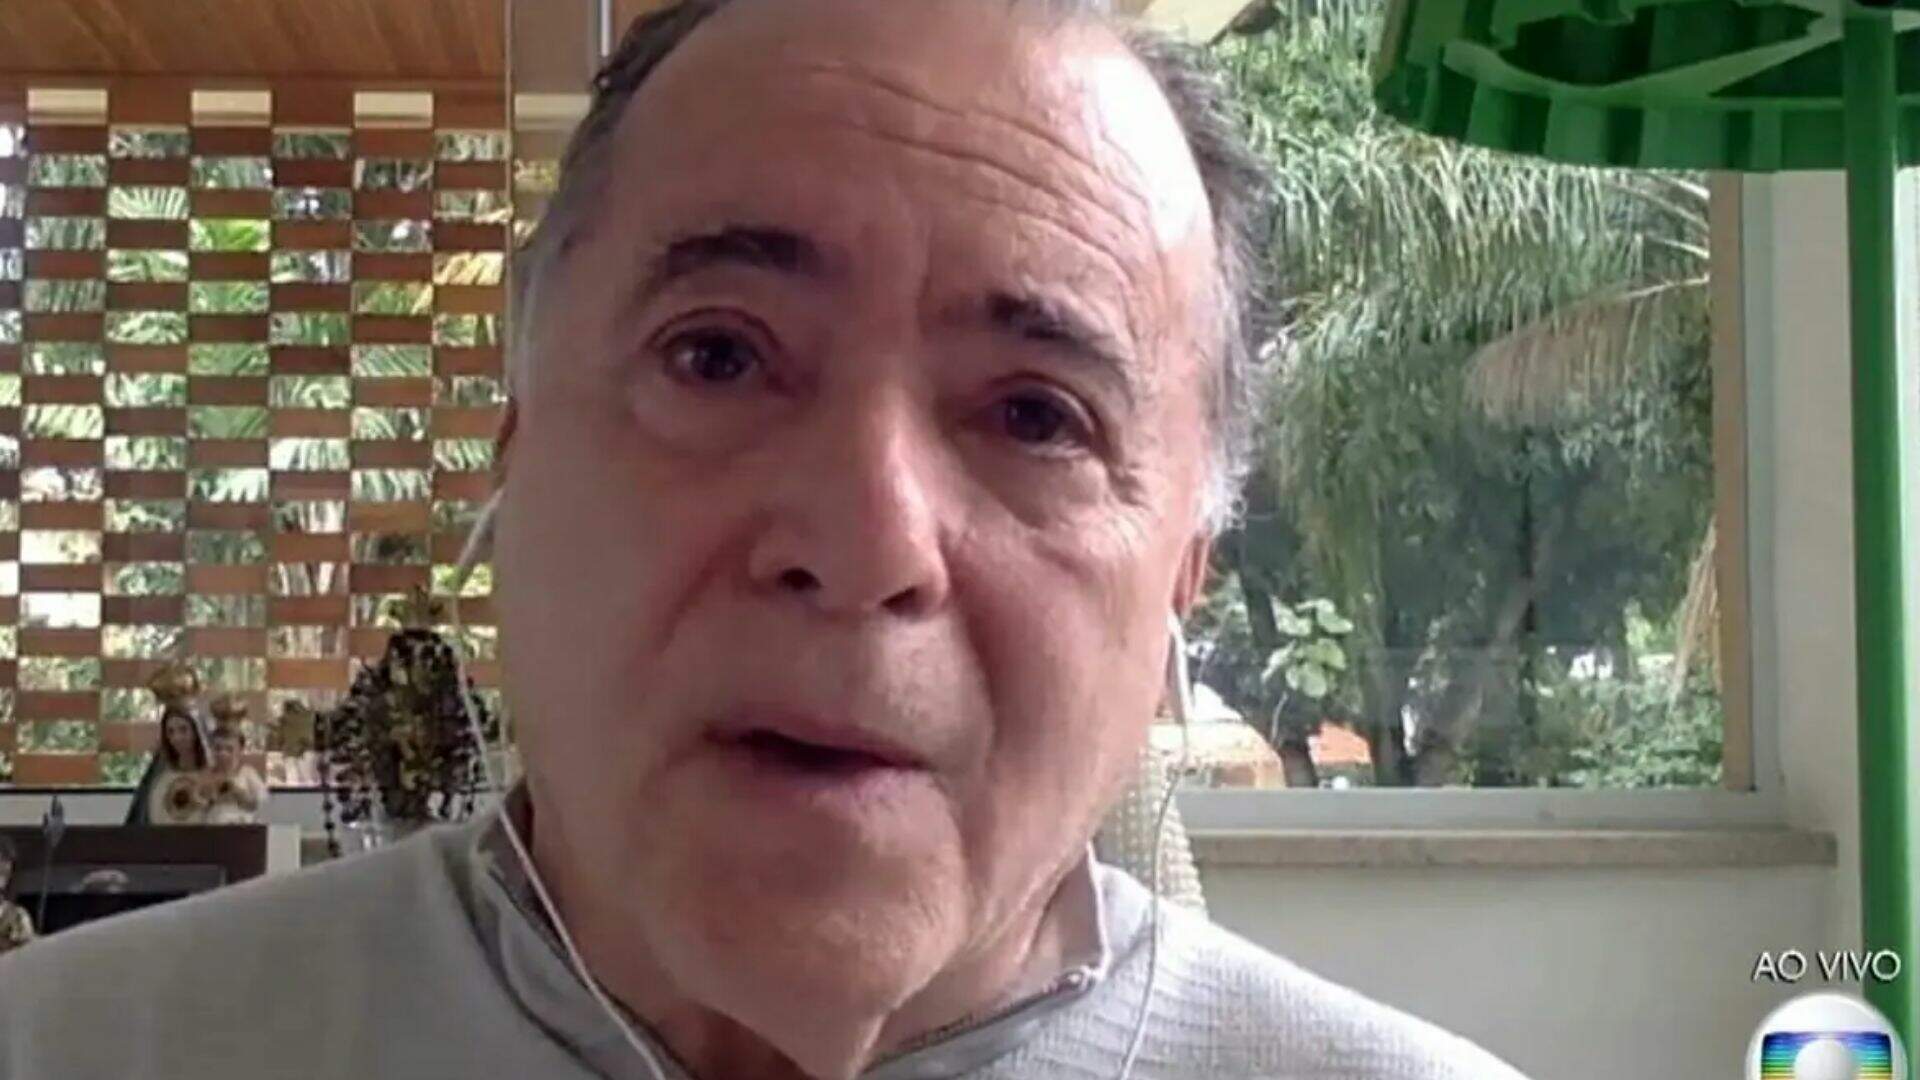 Polêmica! Tony Ramos resolve quebrar o silêncio e fala sobre demissão na Rede Globo - Metropolitana FM